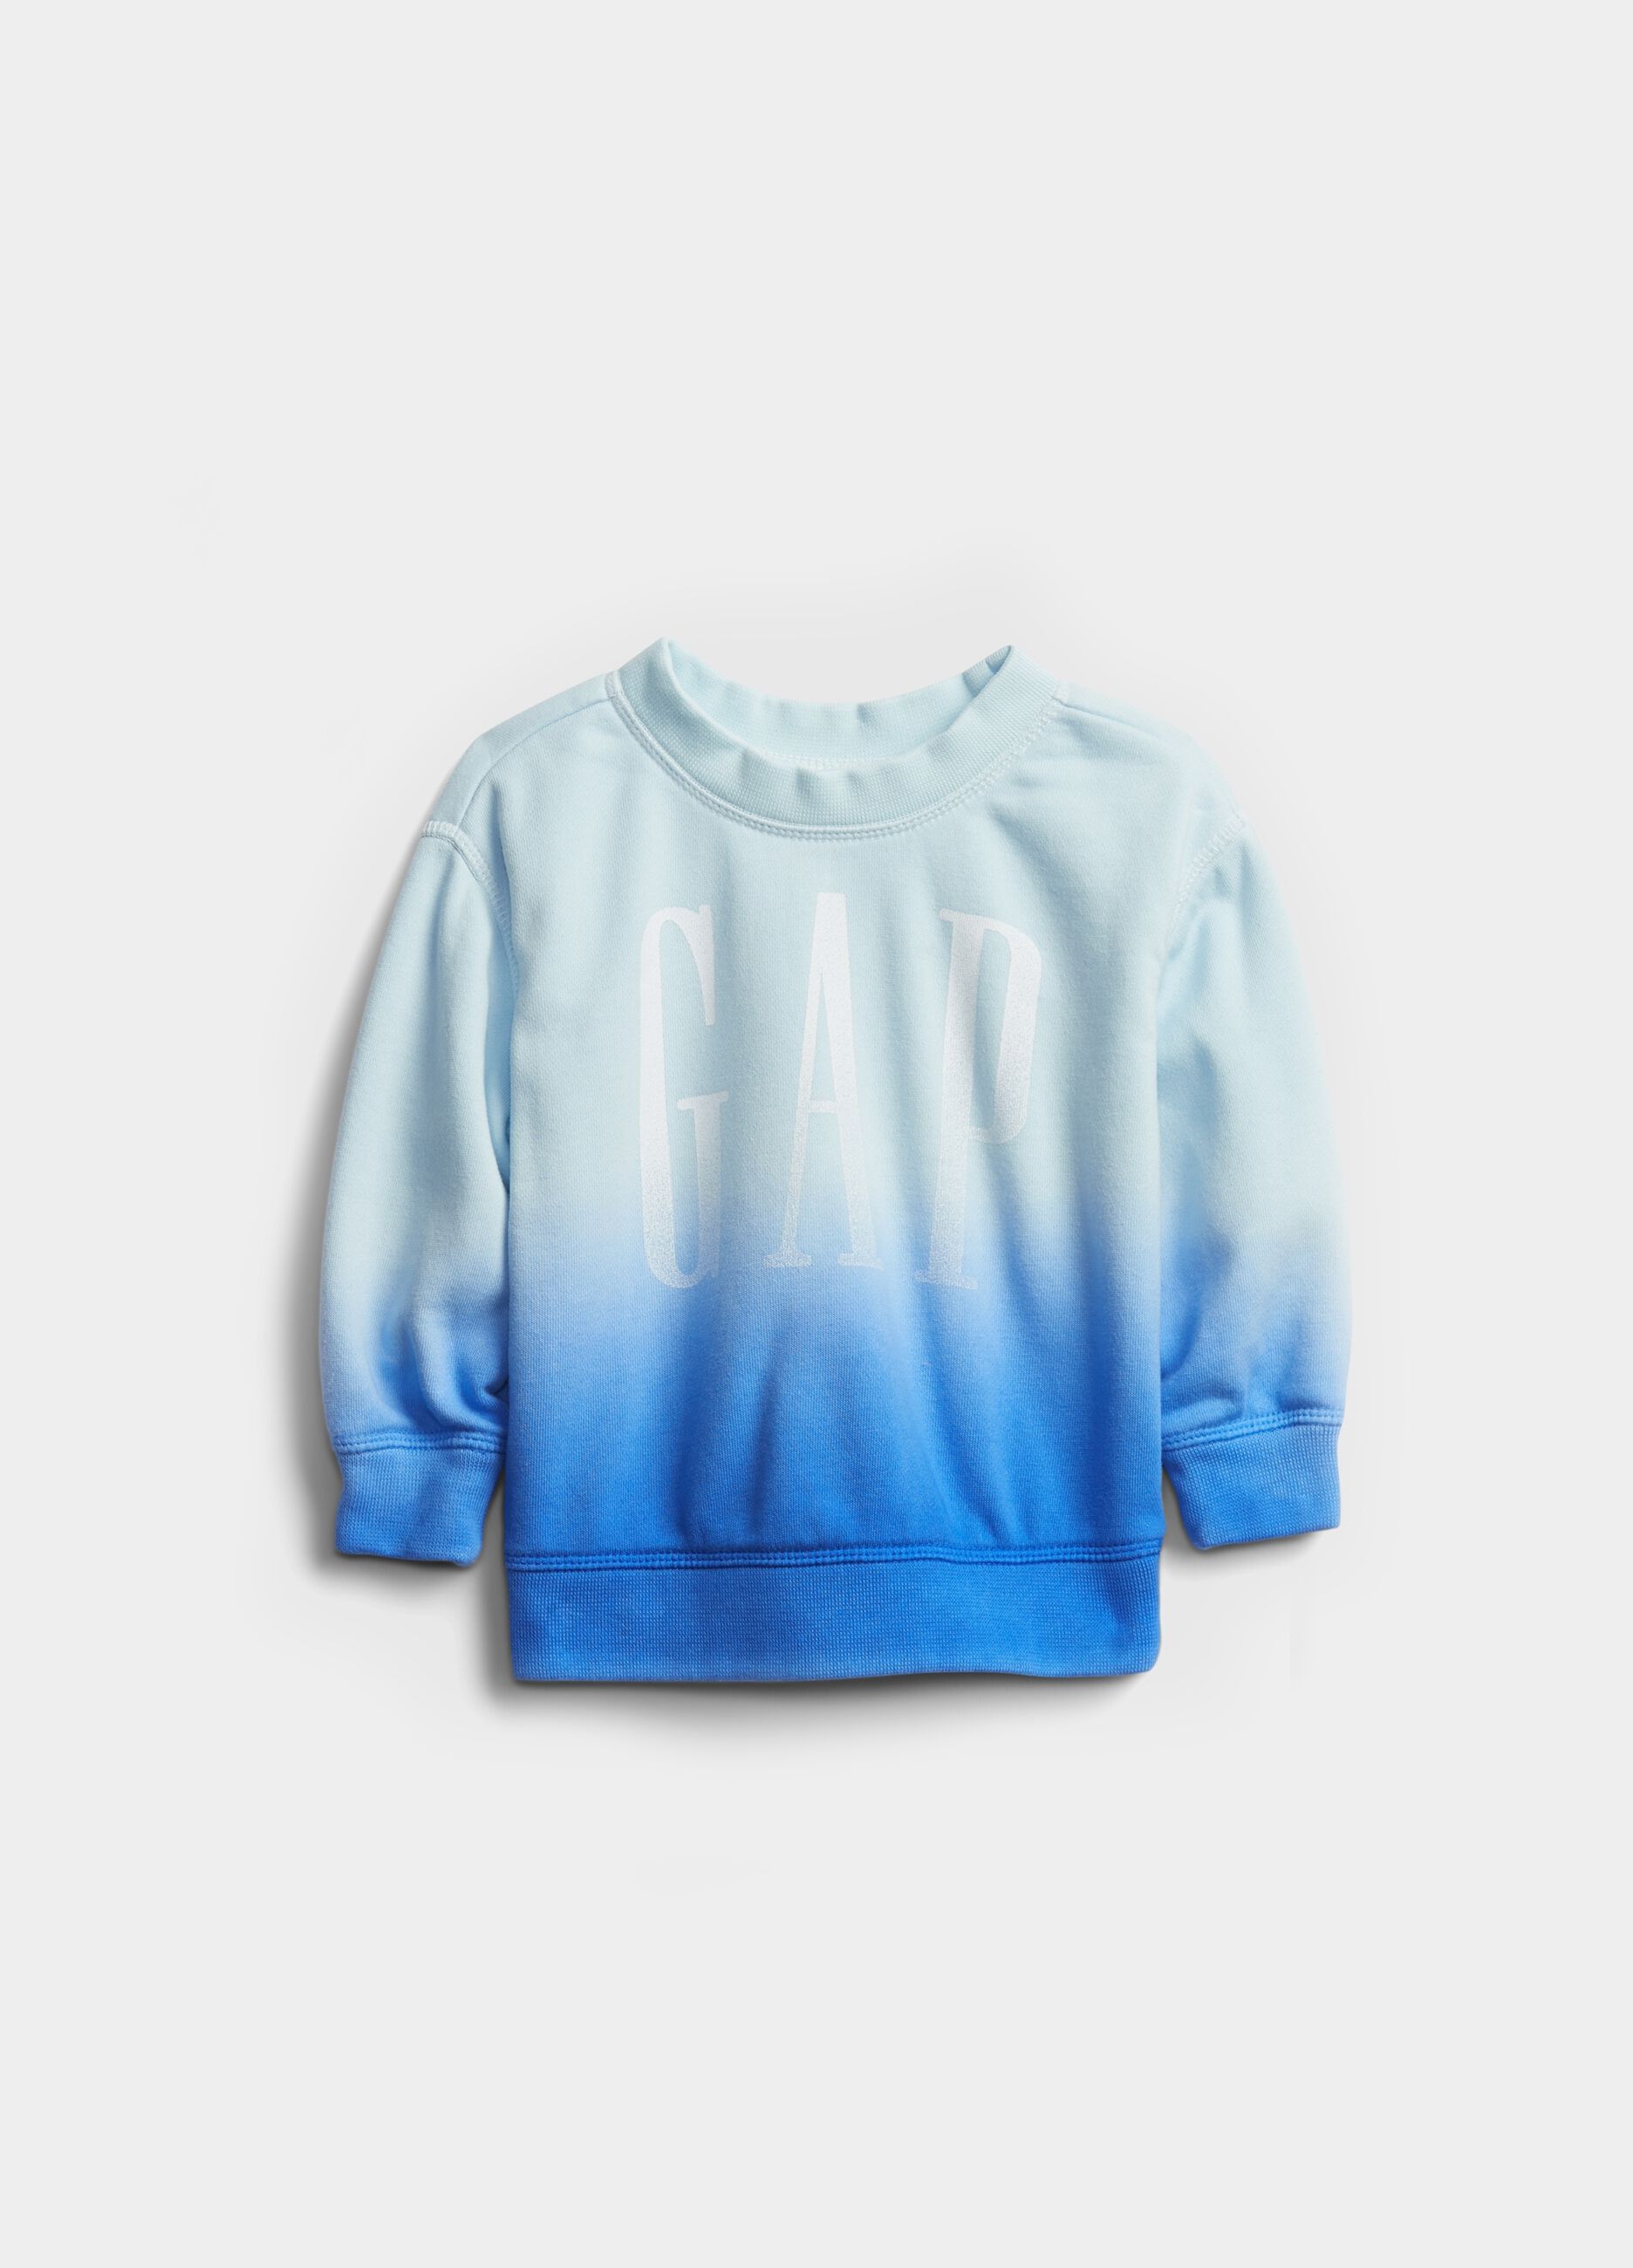 Degradé-effect sweatshirt with round neck